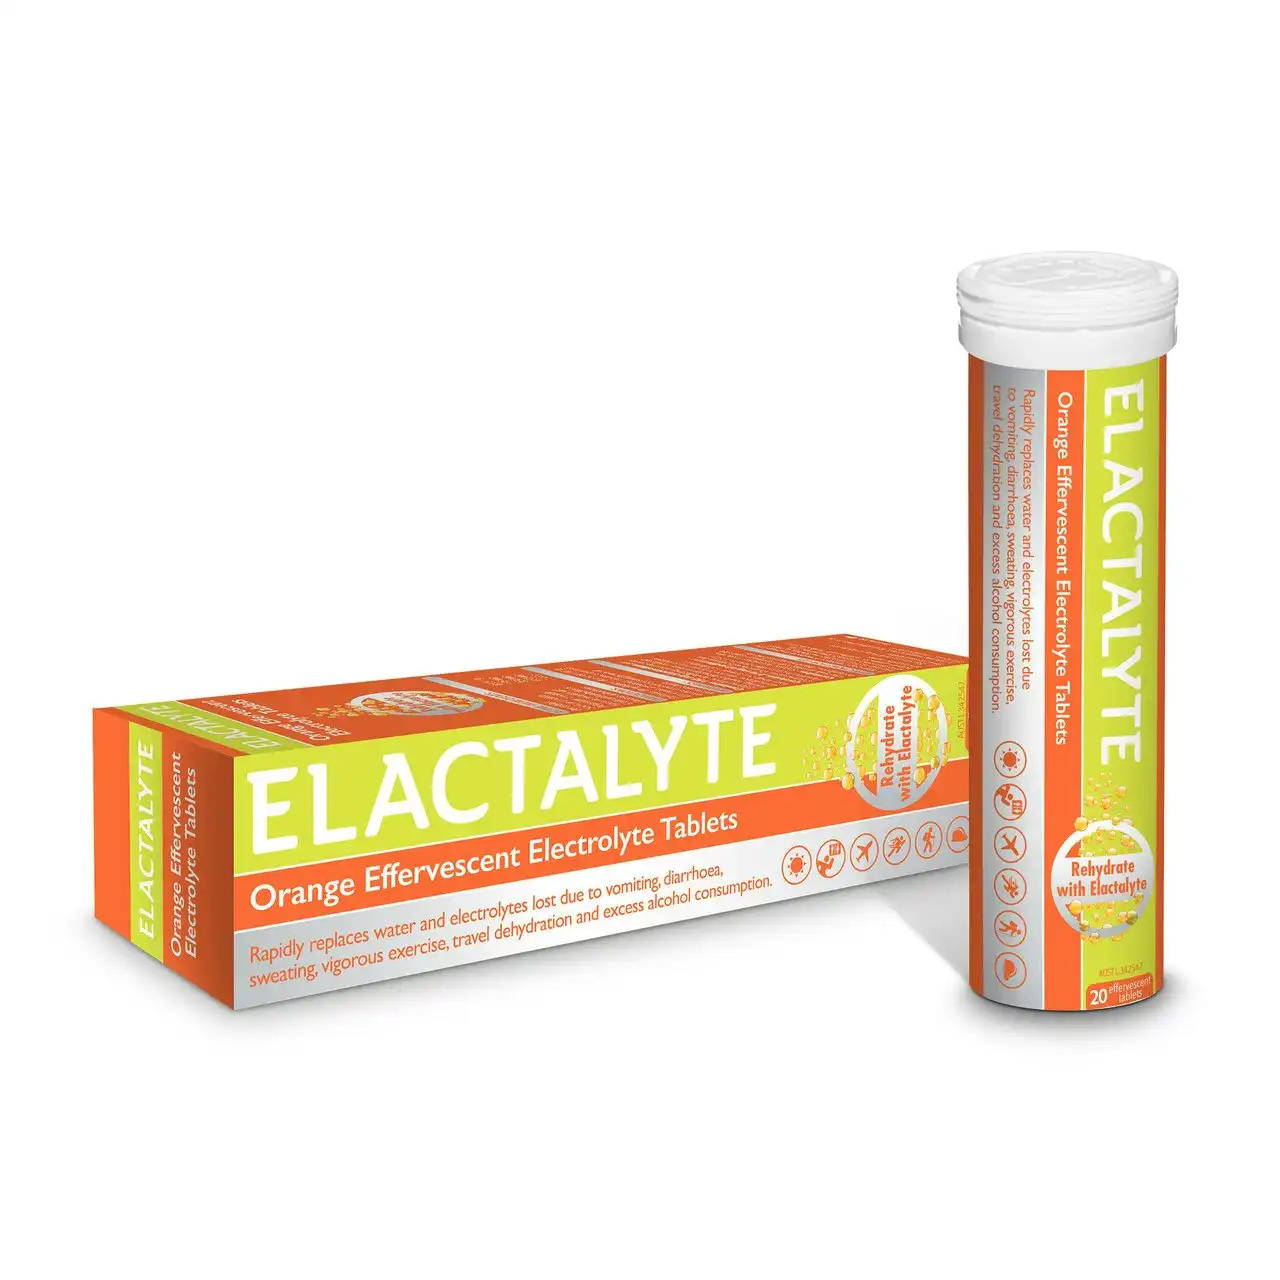 Elactalyte Orange Effervescent Electrolyte 20 Tablets